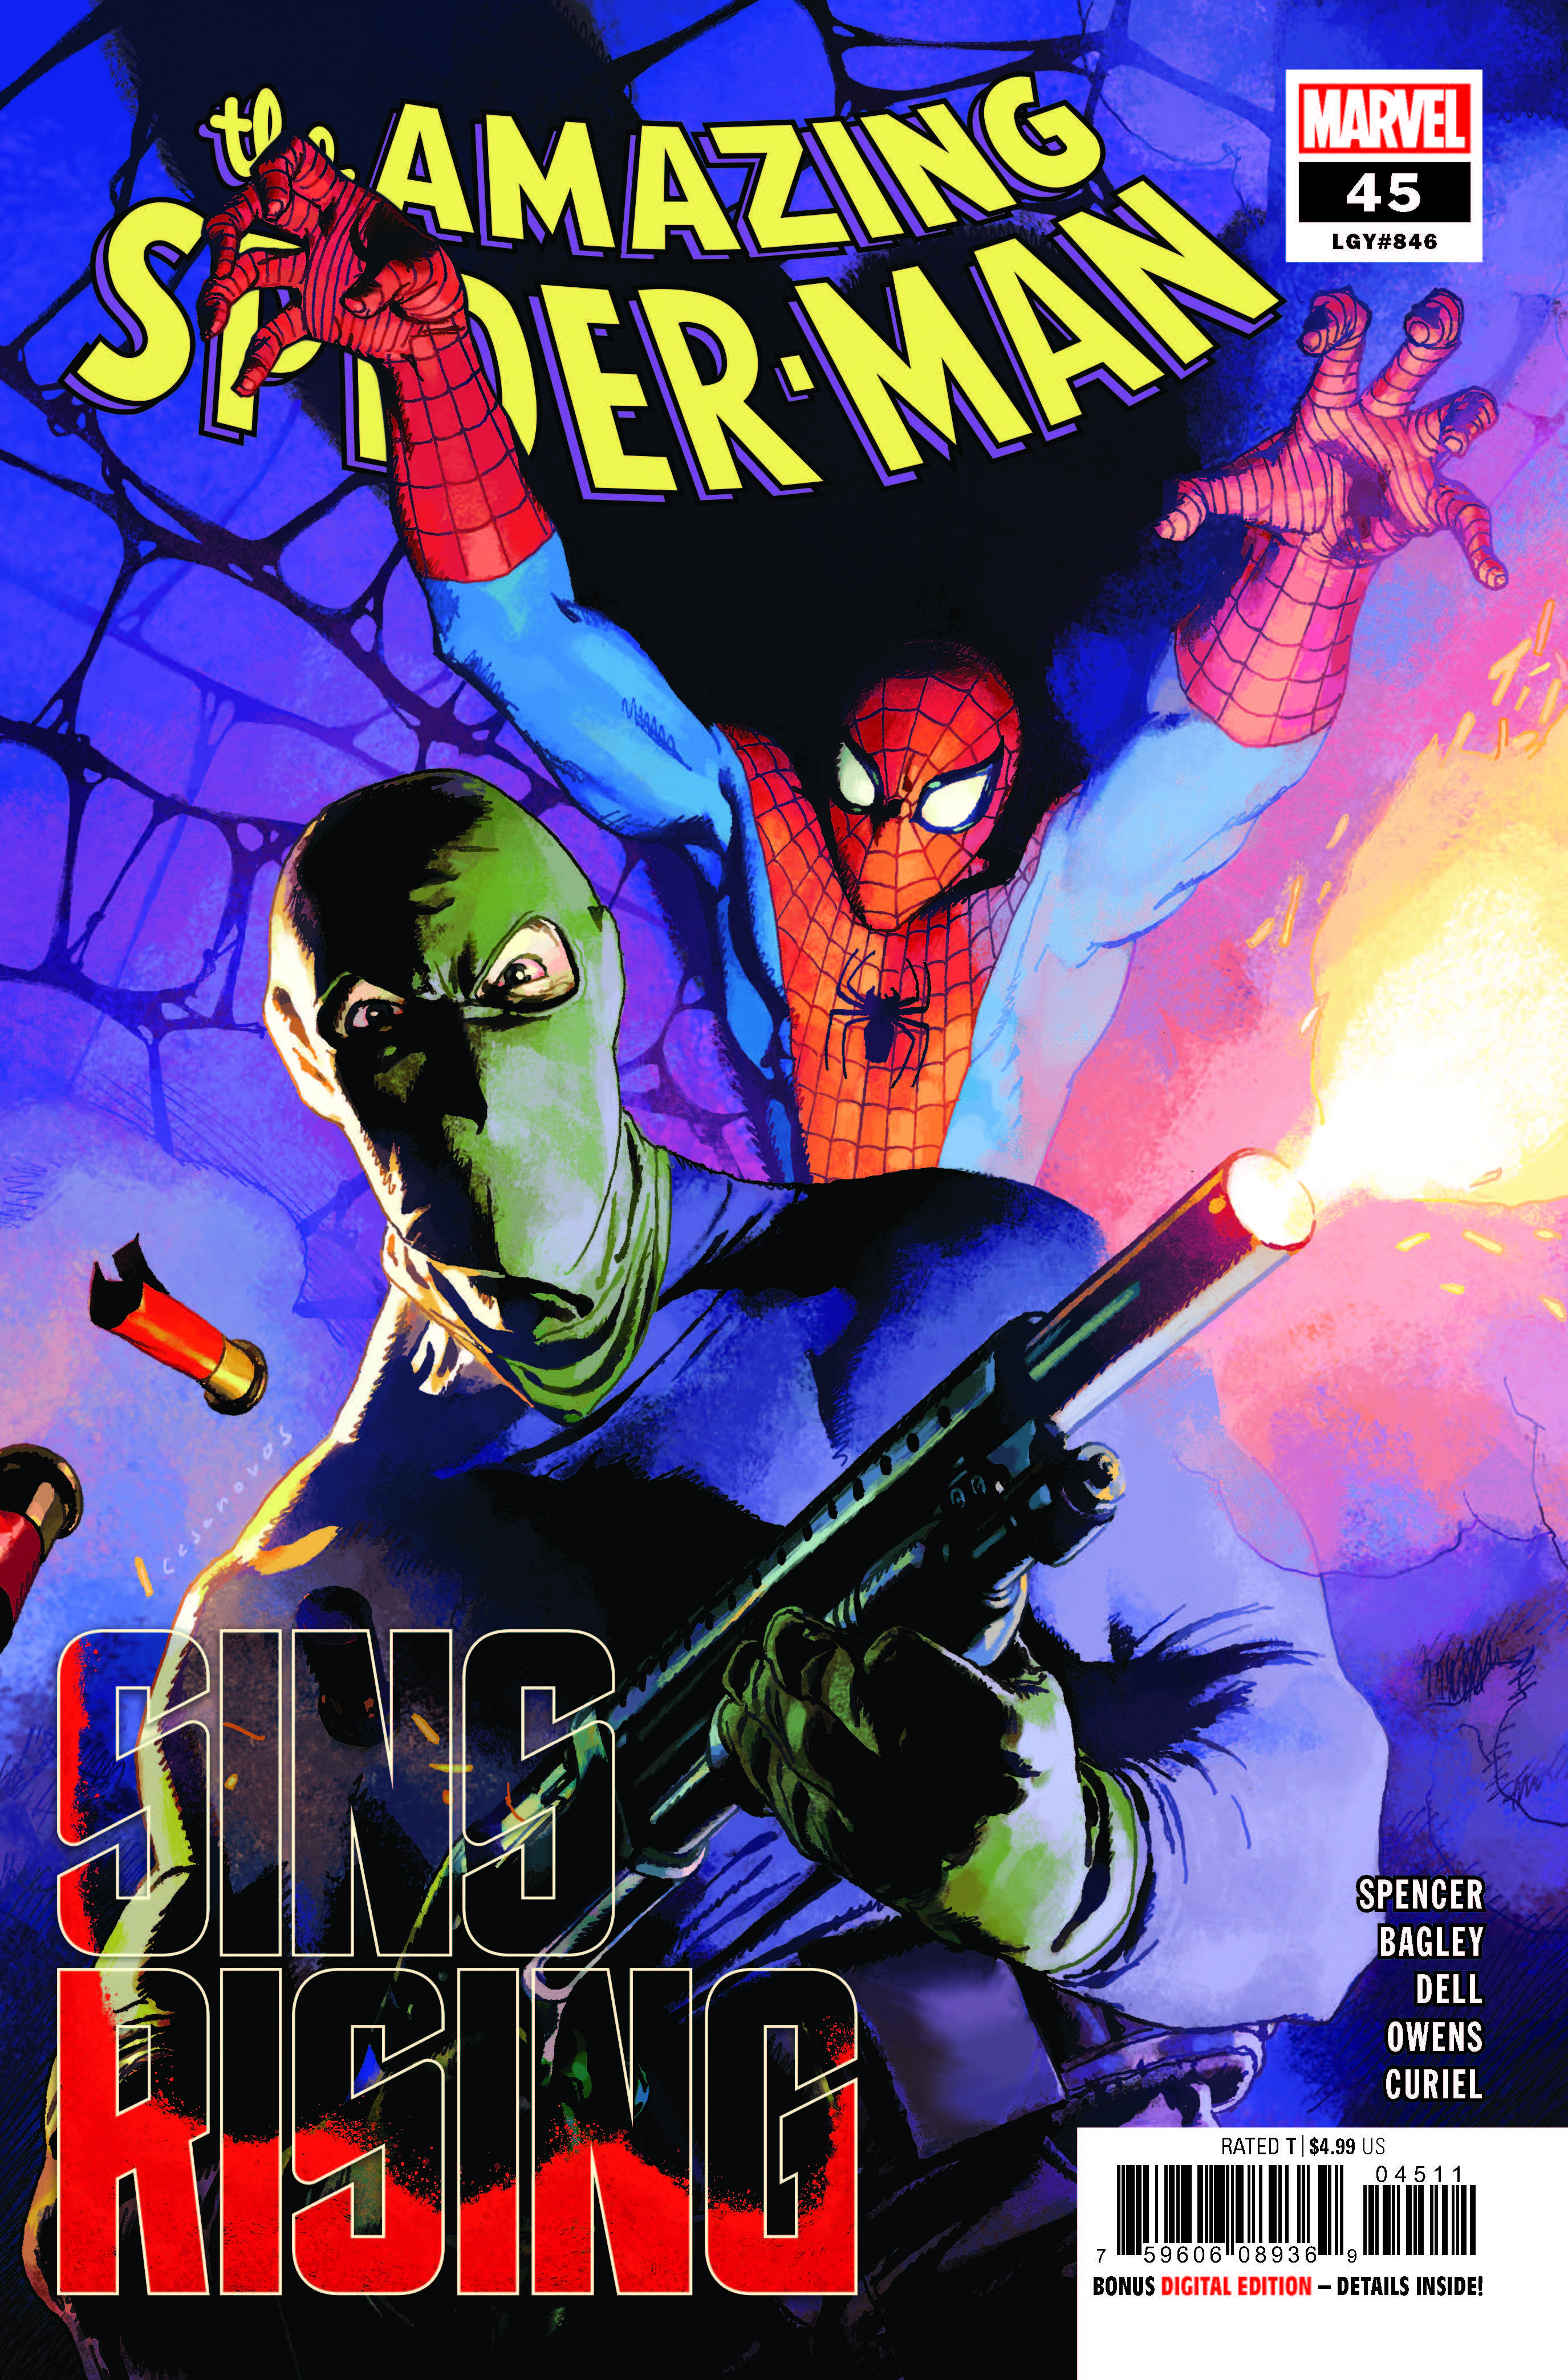 Amazing Spider-Man #45 (2018)